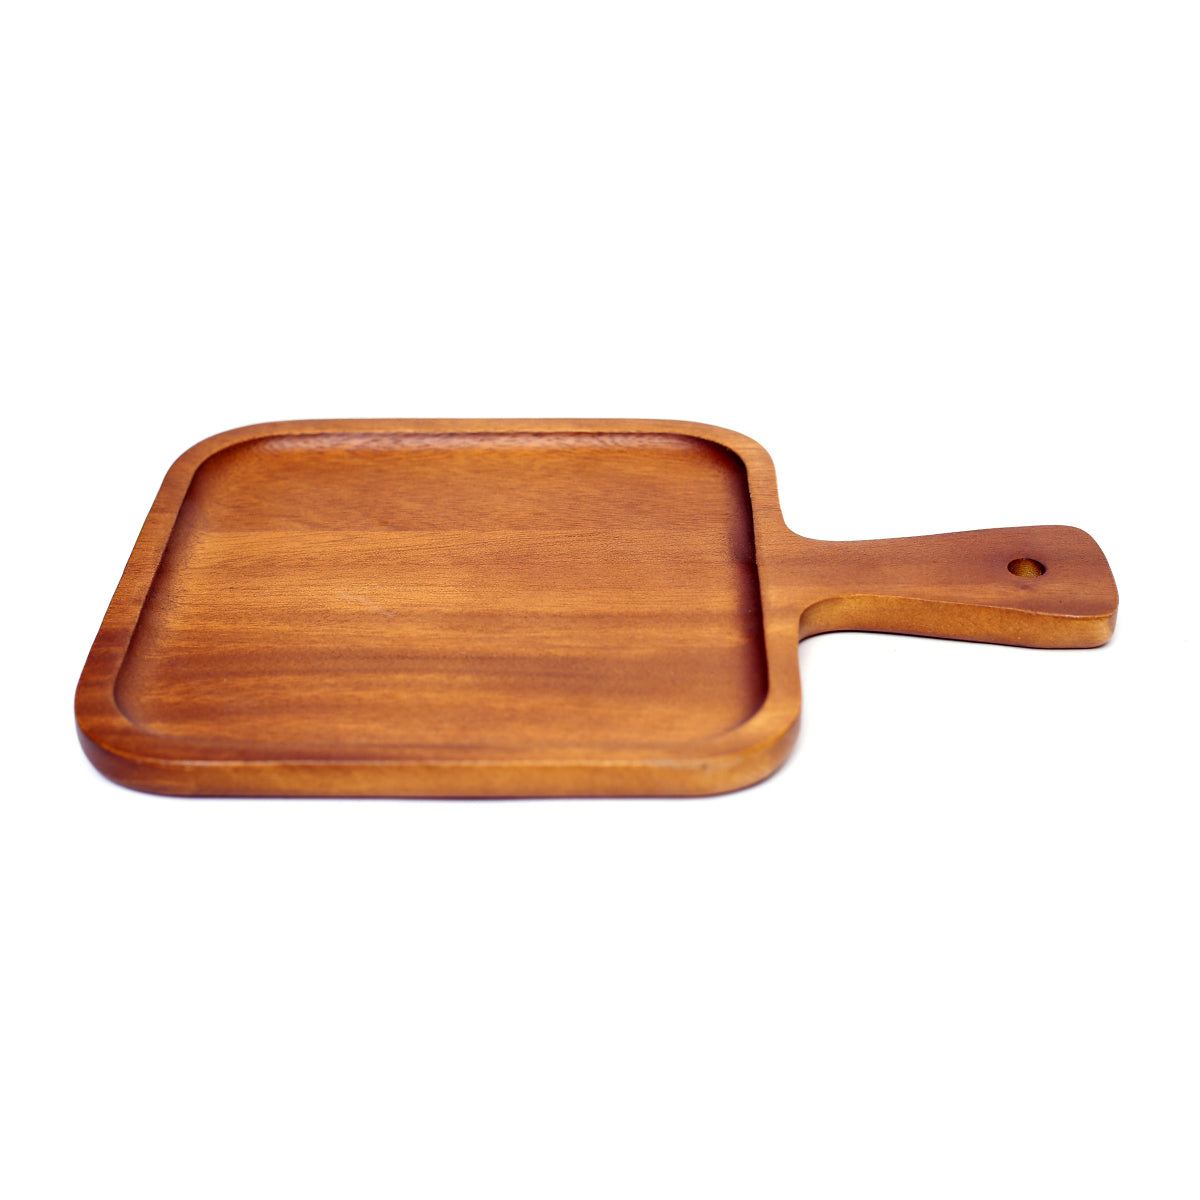 Wooden Platter.CHCK-31